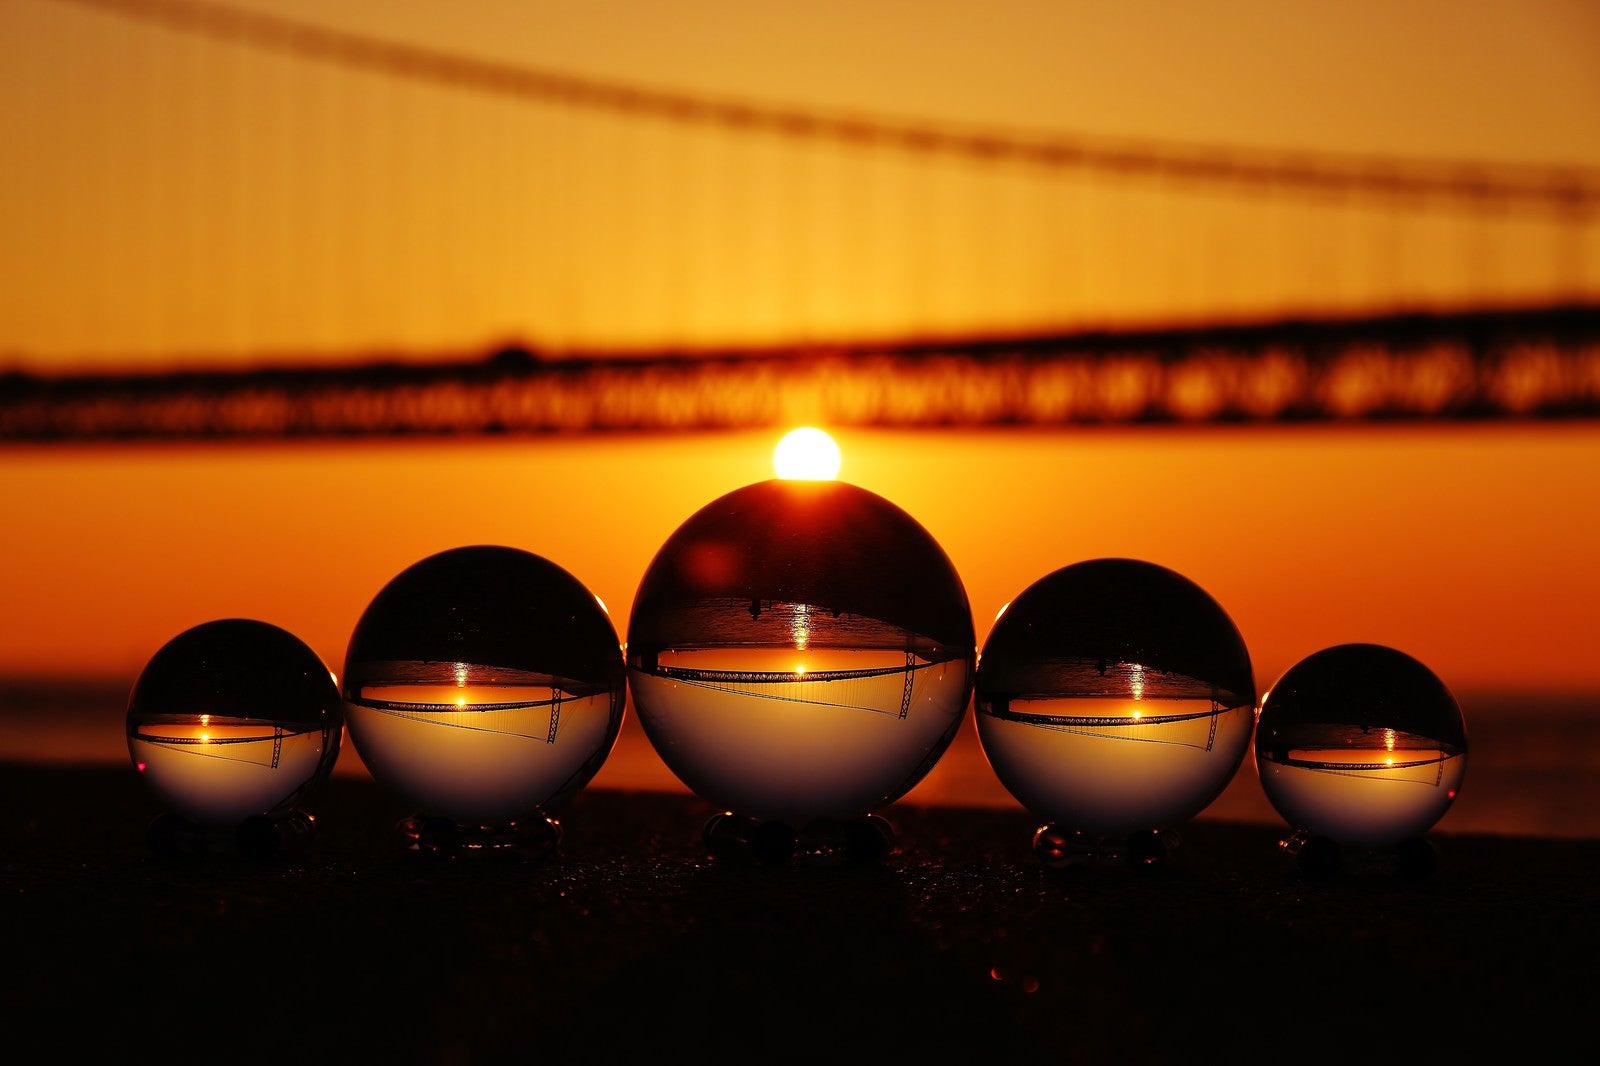 「日の出が橋にかかる様子と水晶球」の写真